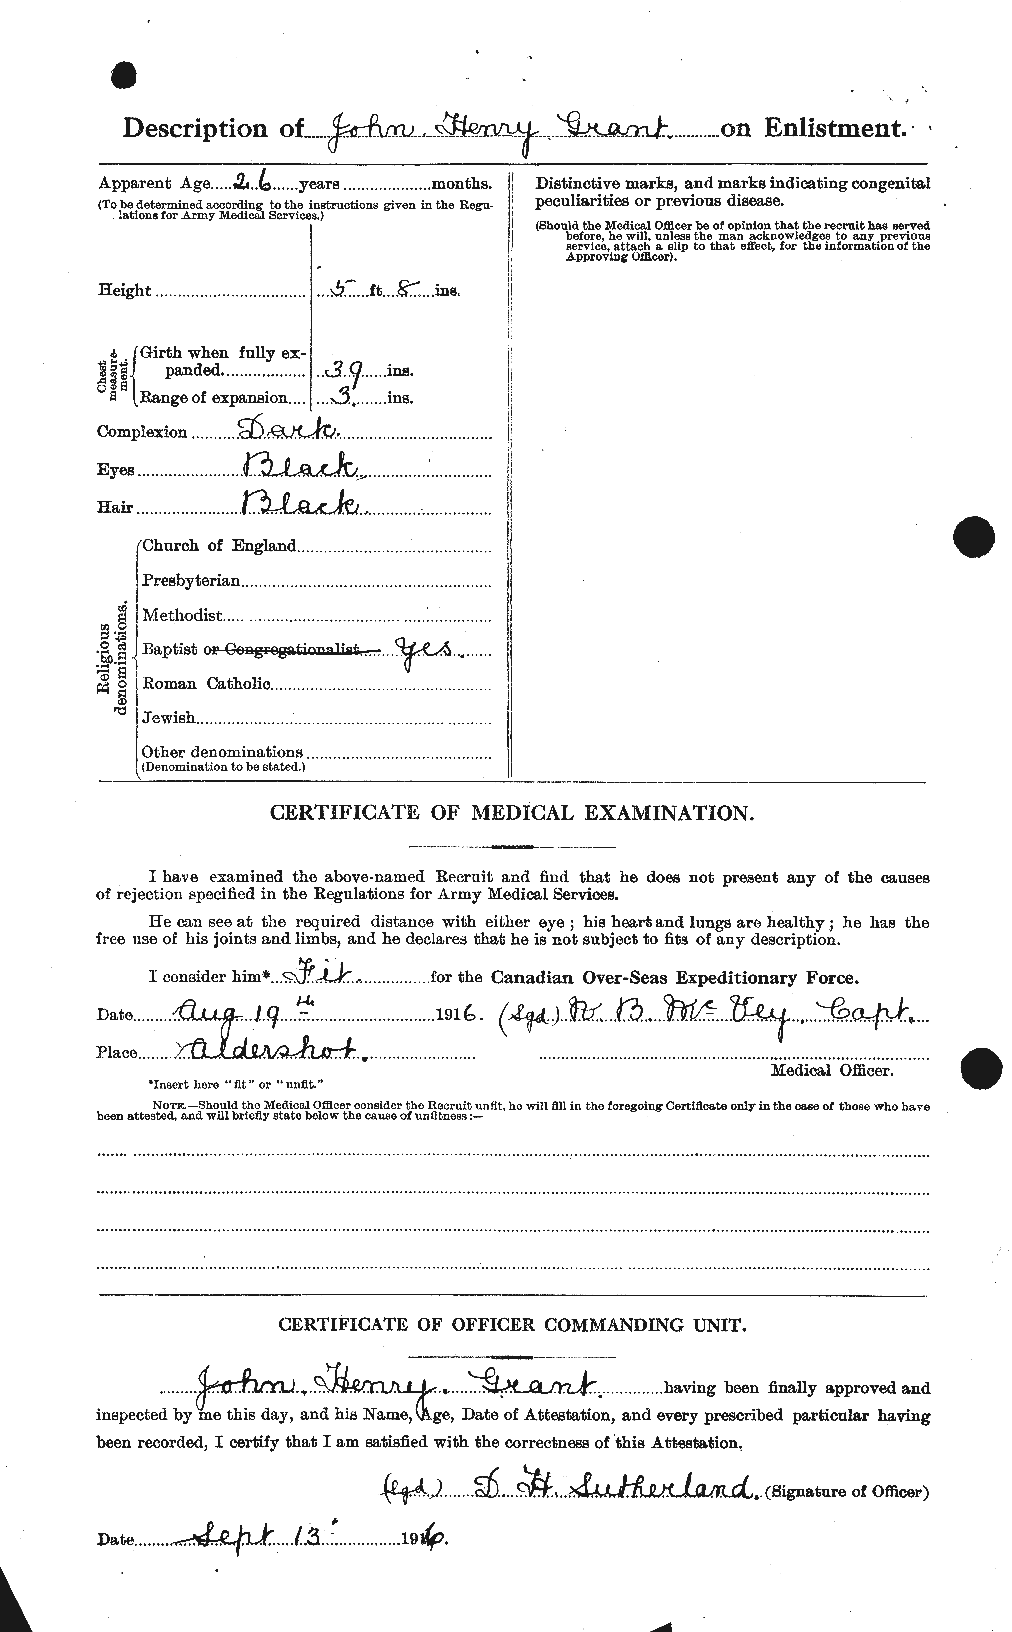 Dossiers du Personnel de la Première Guerre mondiale - CEC 360946b